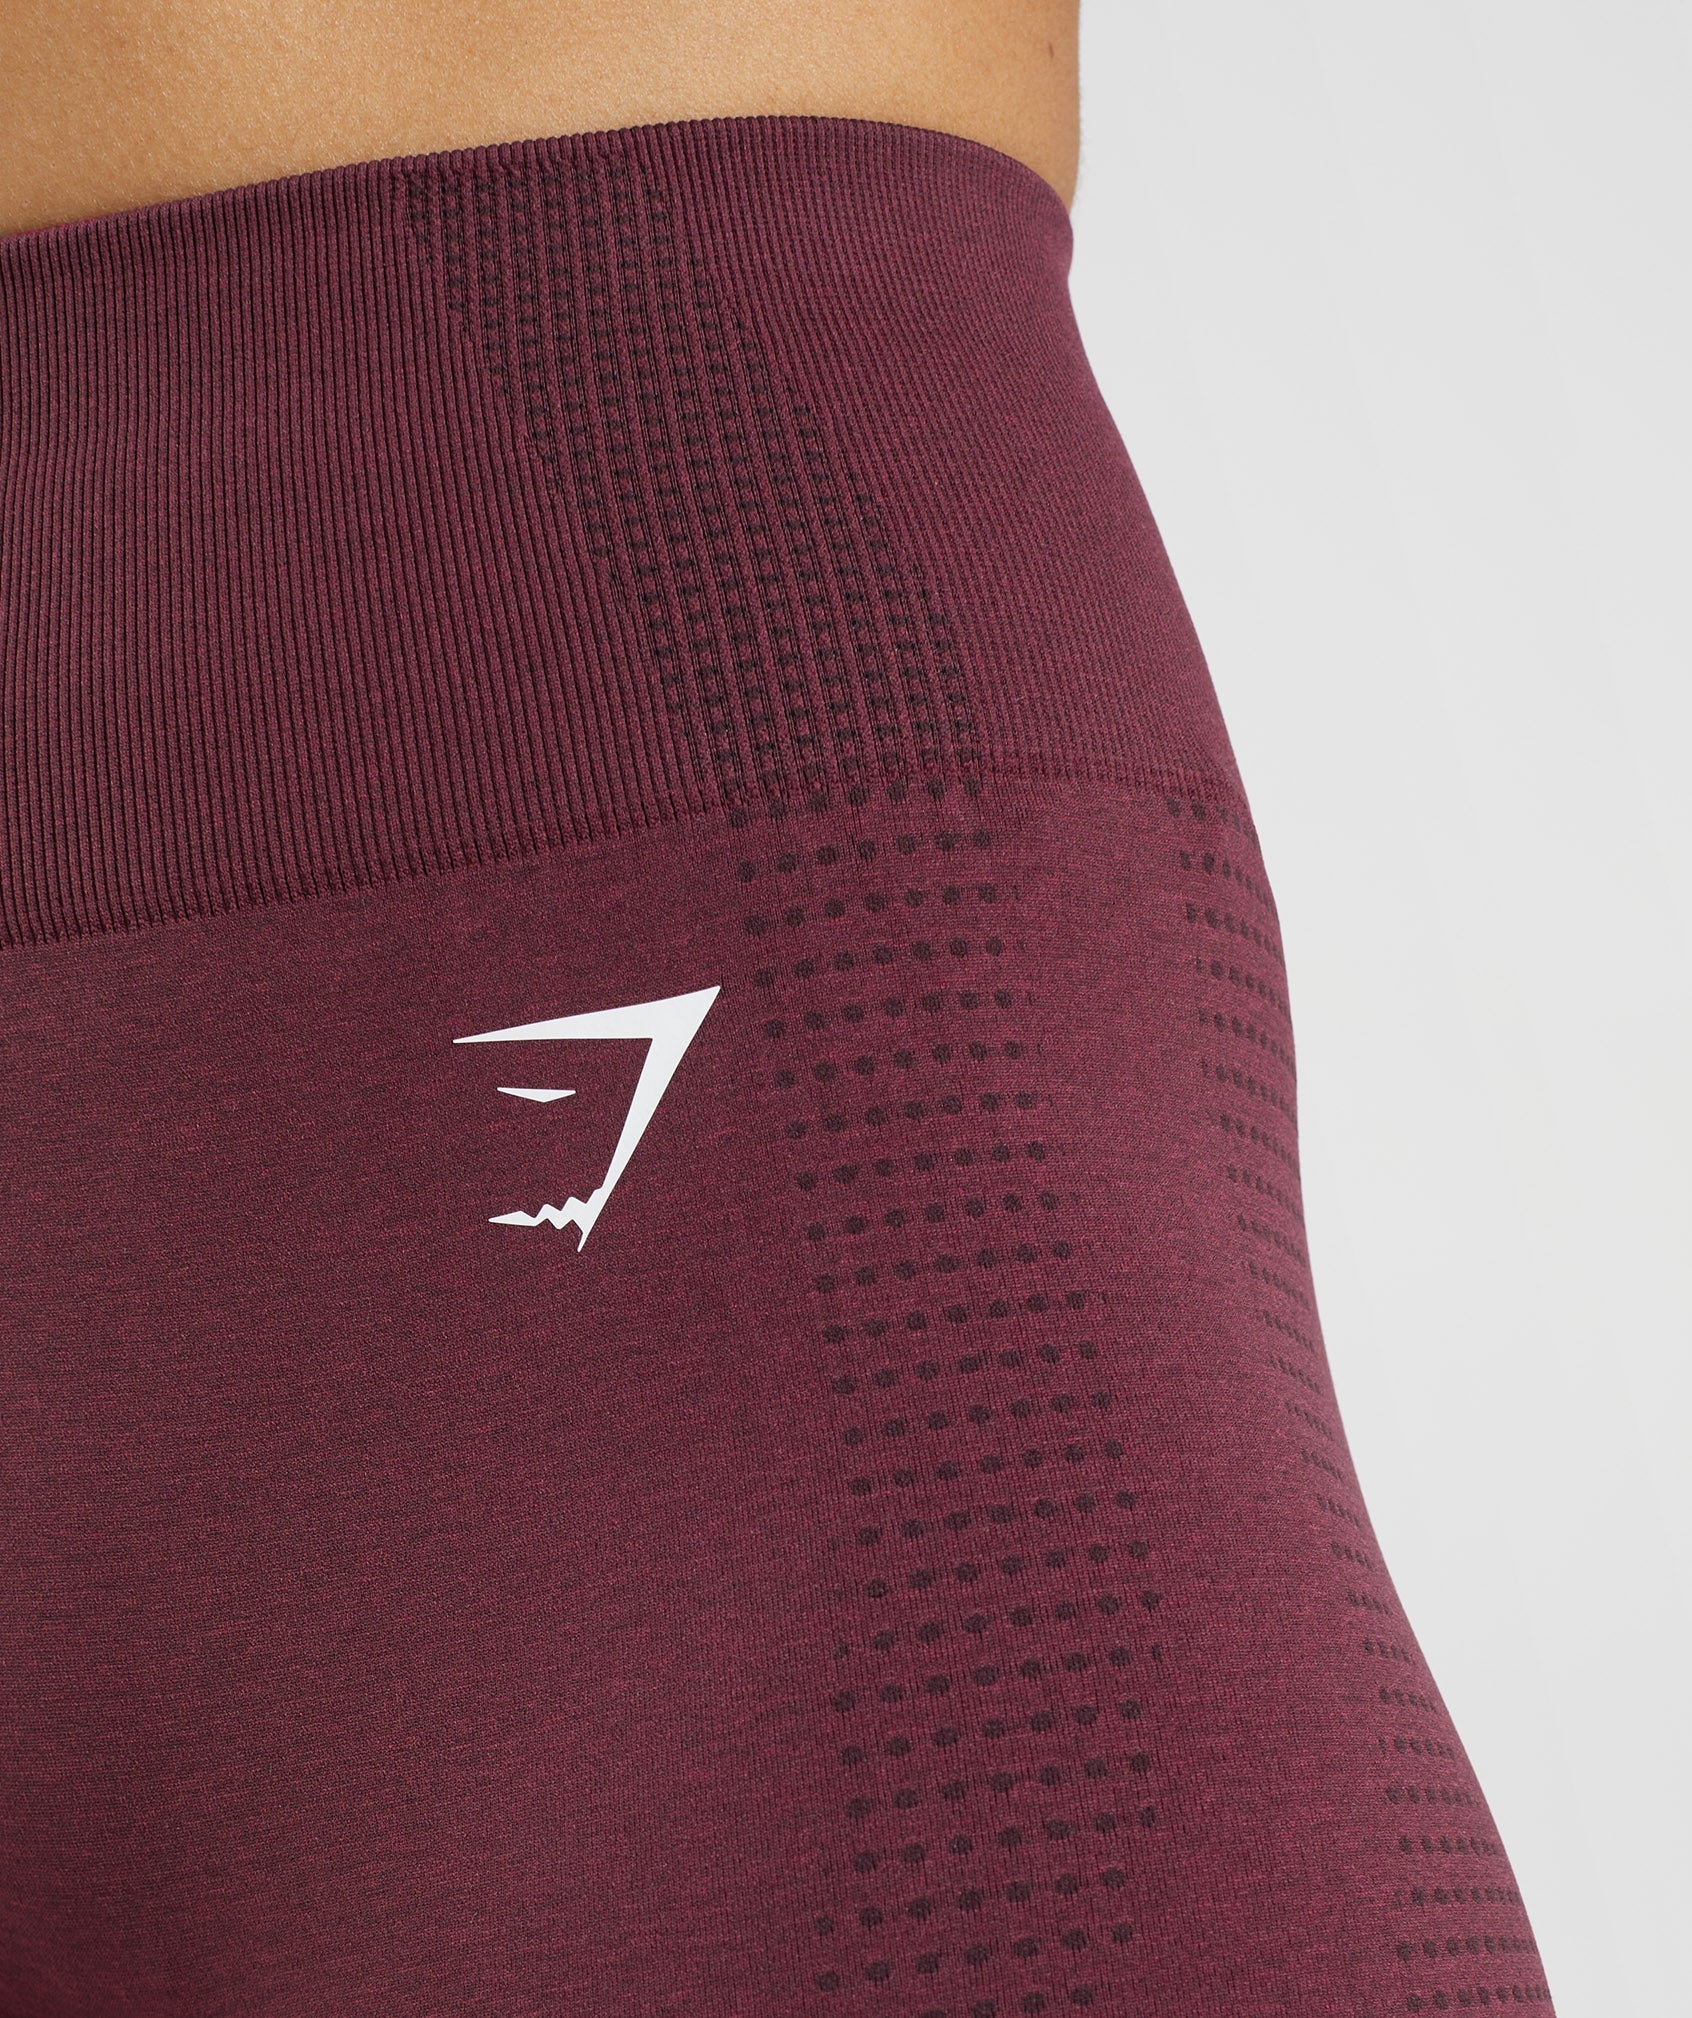 Gym shark vital seamless 2.0 shorts, Women's Fashion, Activewear